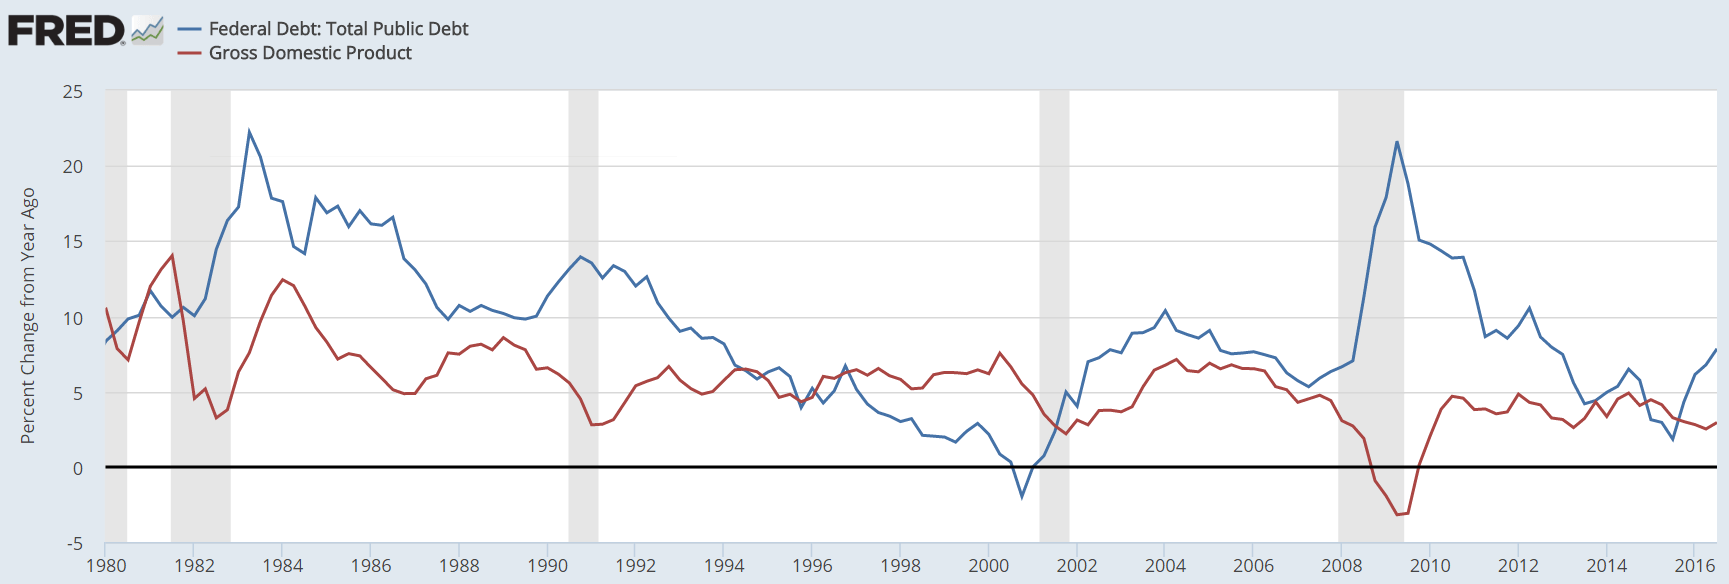 アメリカの公的債務・GDP成長率